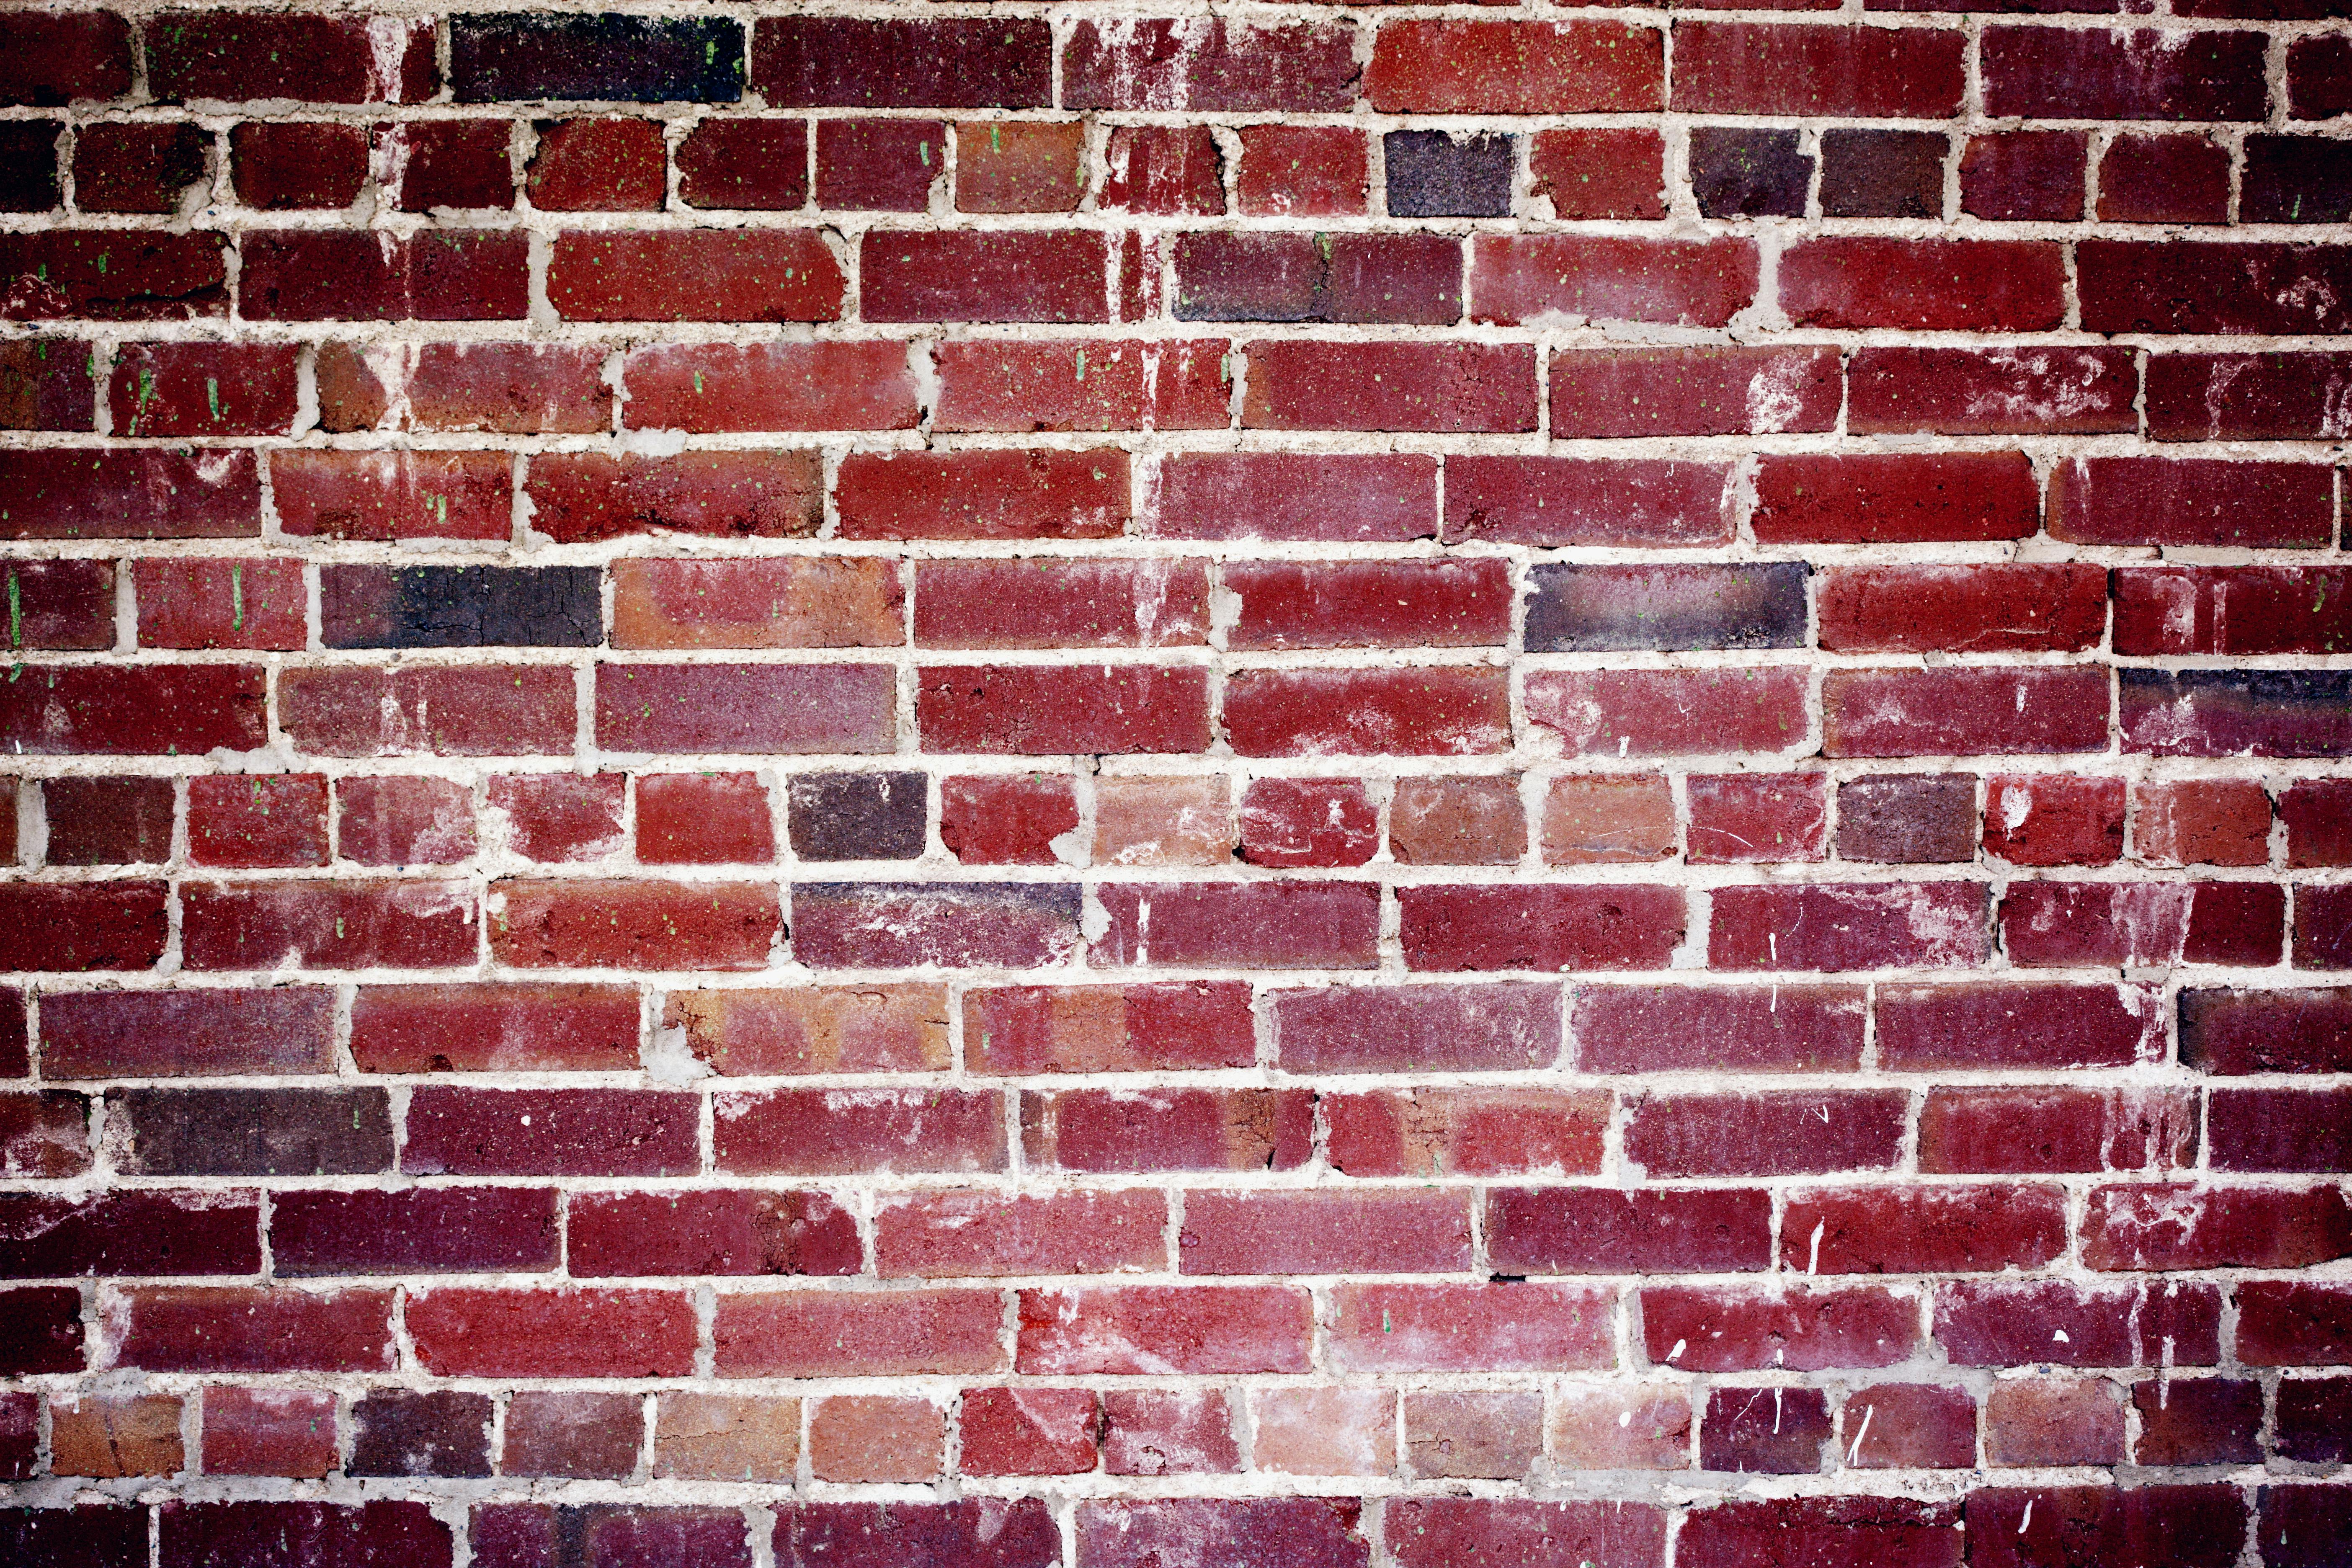 brick wall wallpaper hd